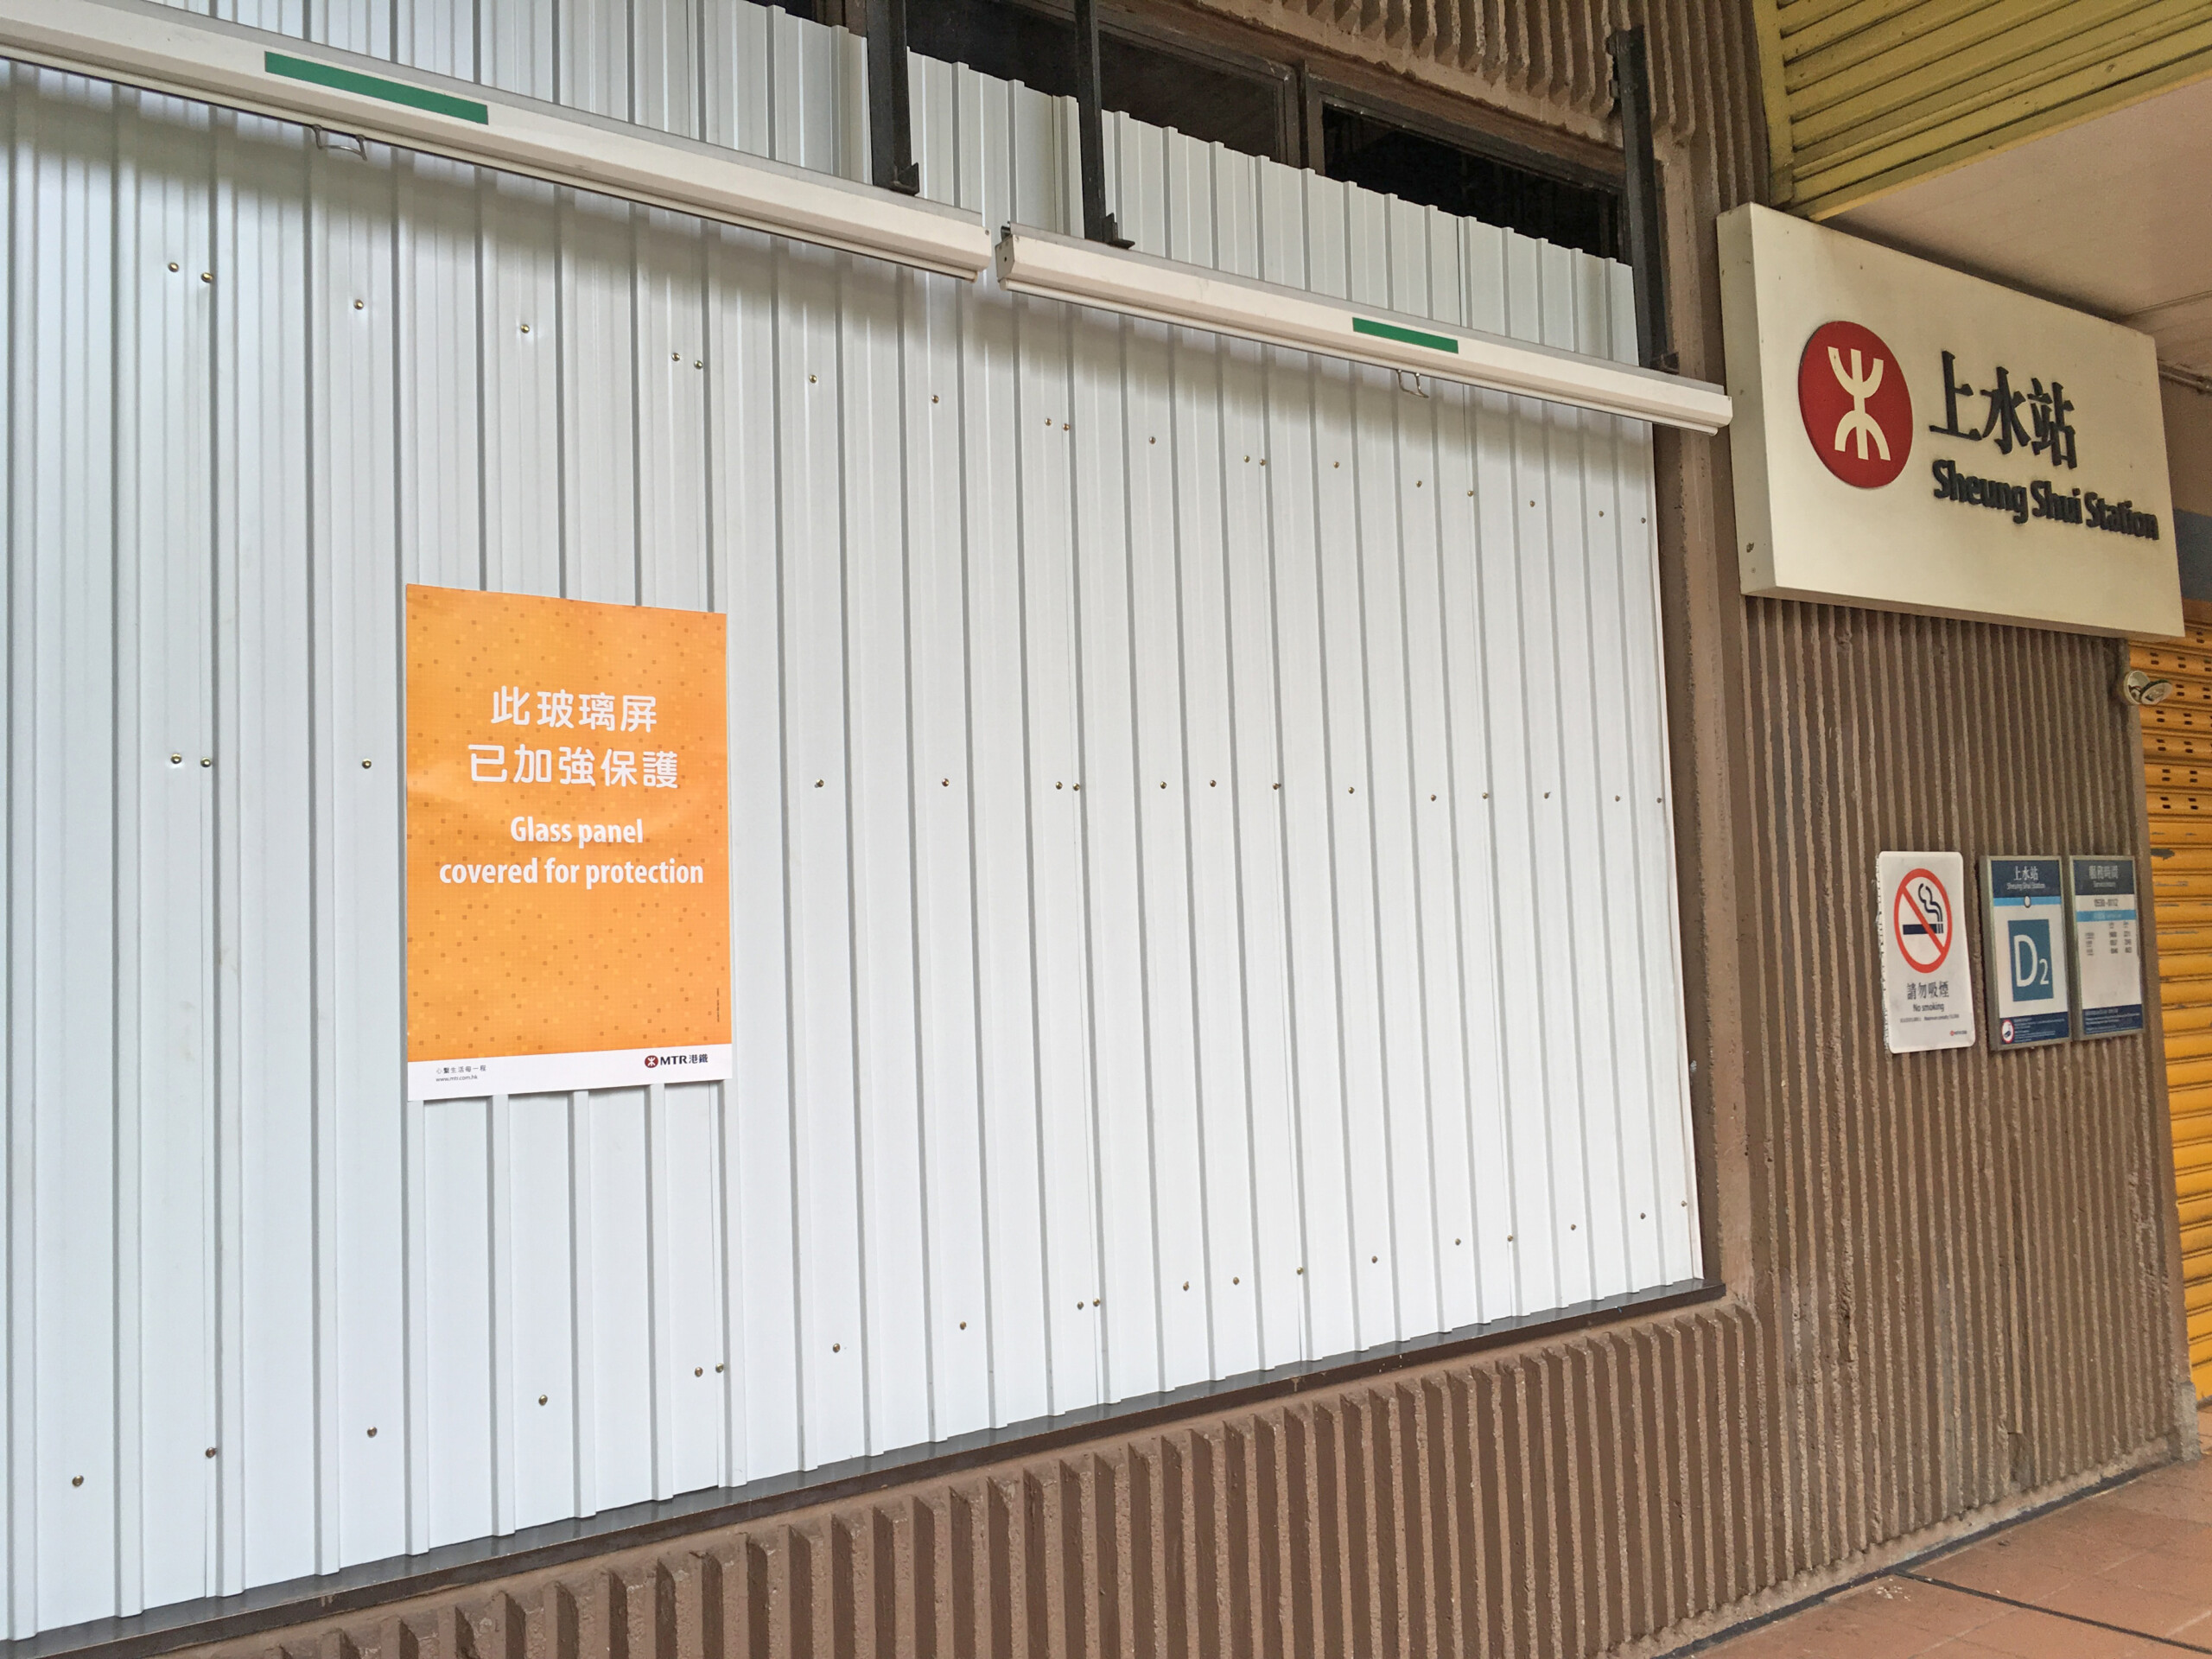 Glass Protectors at Sheung Shui MTR Station, Hong Kong, October 2019